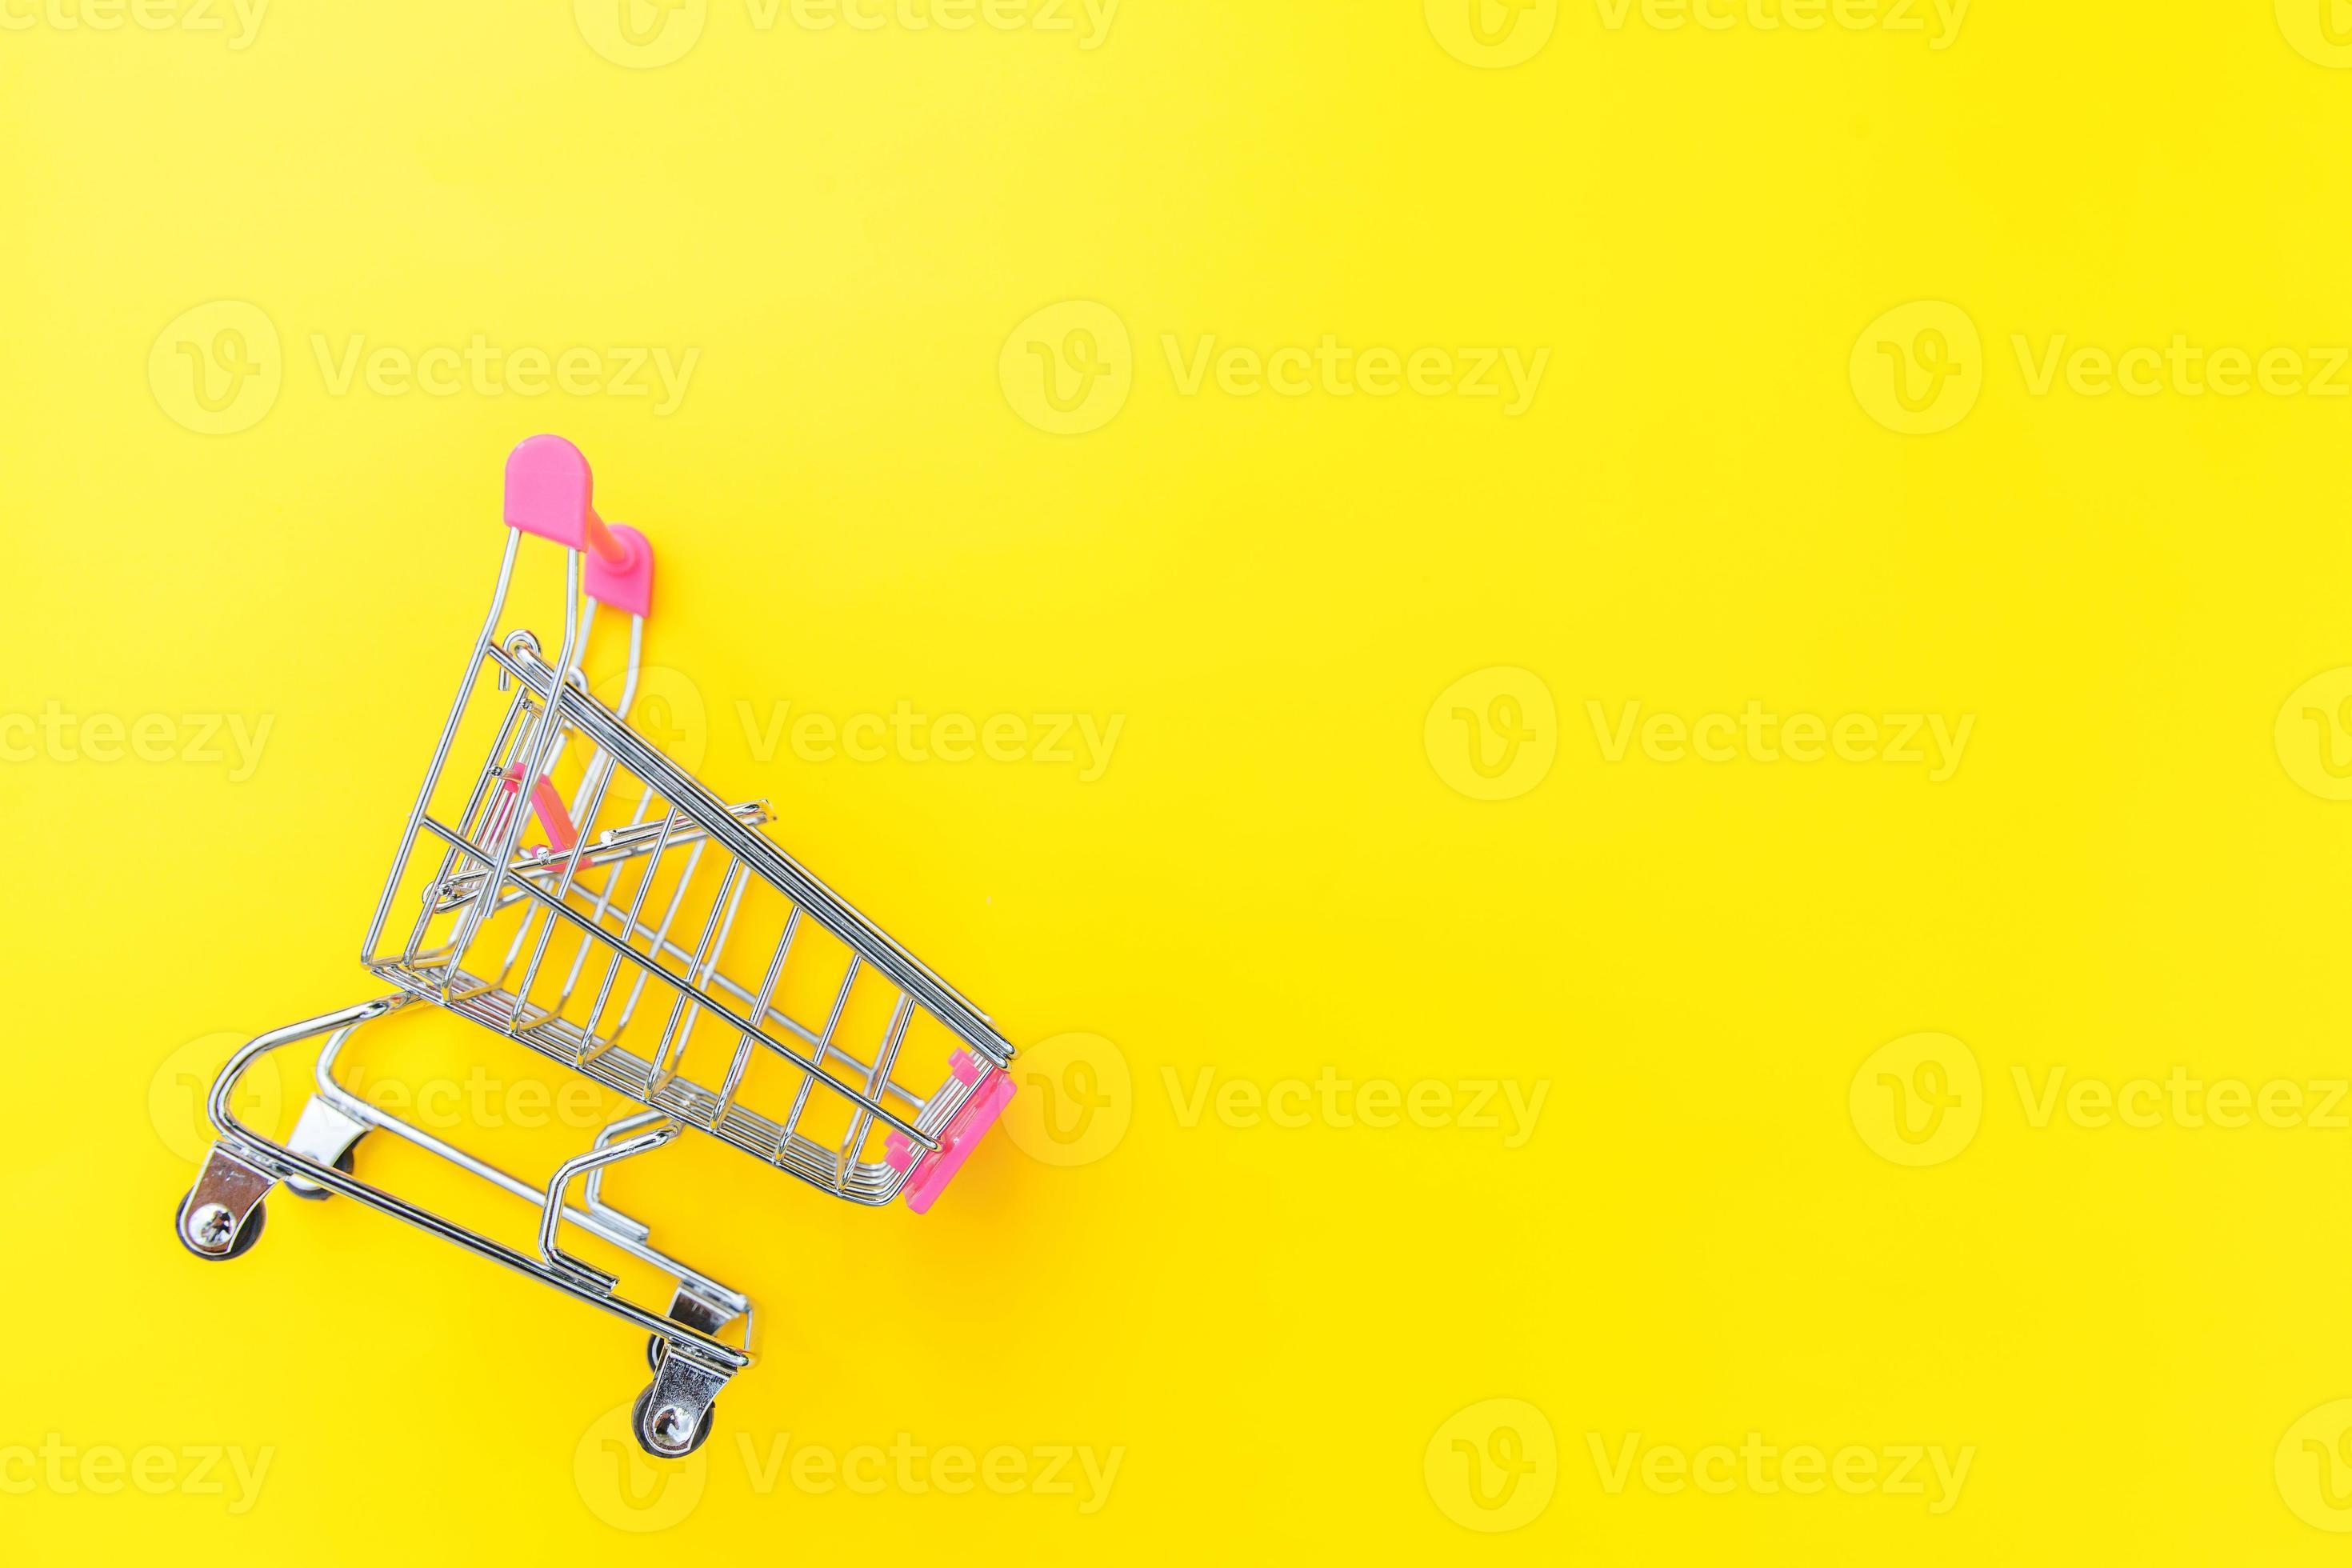 kleine supermarkt kruidenier voor winkelen speelgoed met wielen geïsoleerd op gele trendy moderne mode achtergrond. verkoop kopen winkelcentrum markt winkel consument concept. ruimte 17652833 Stockfoto